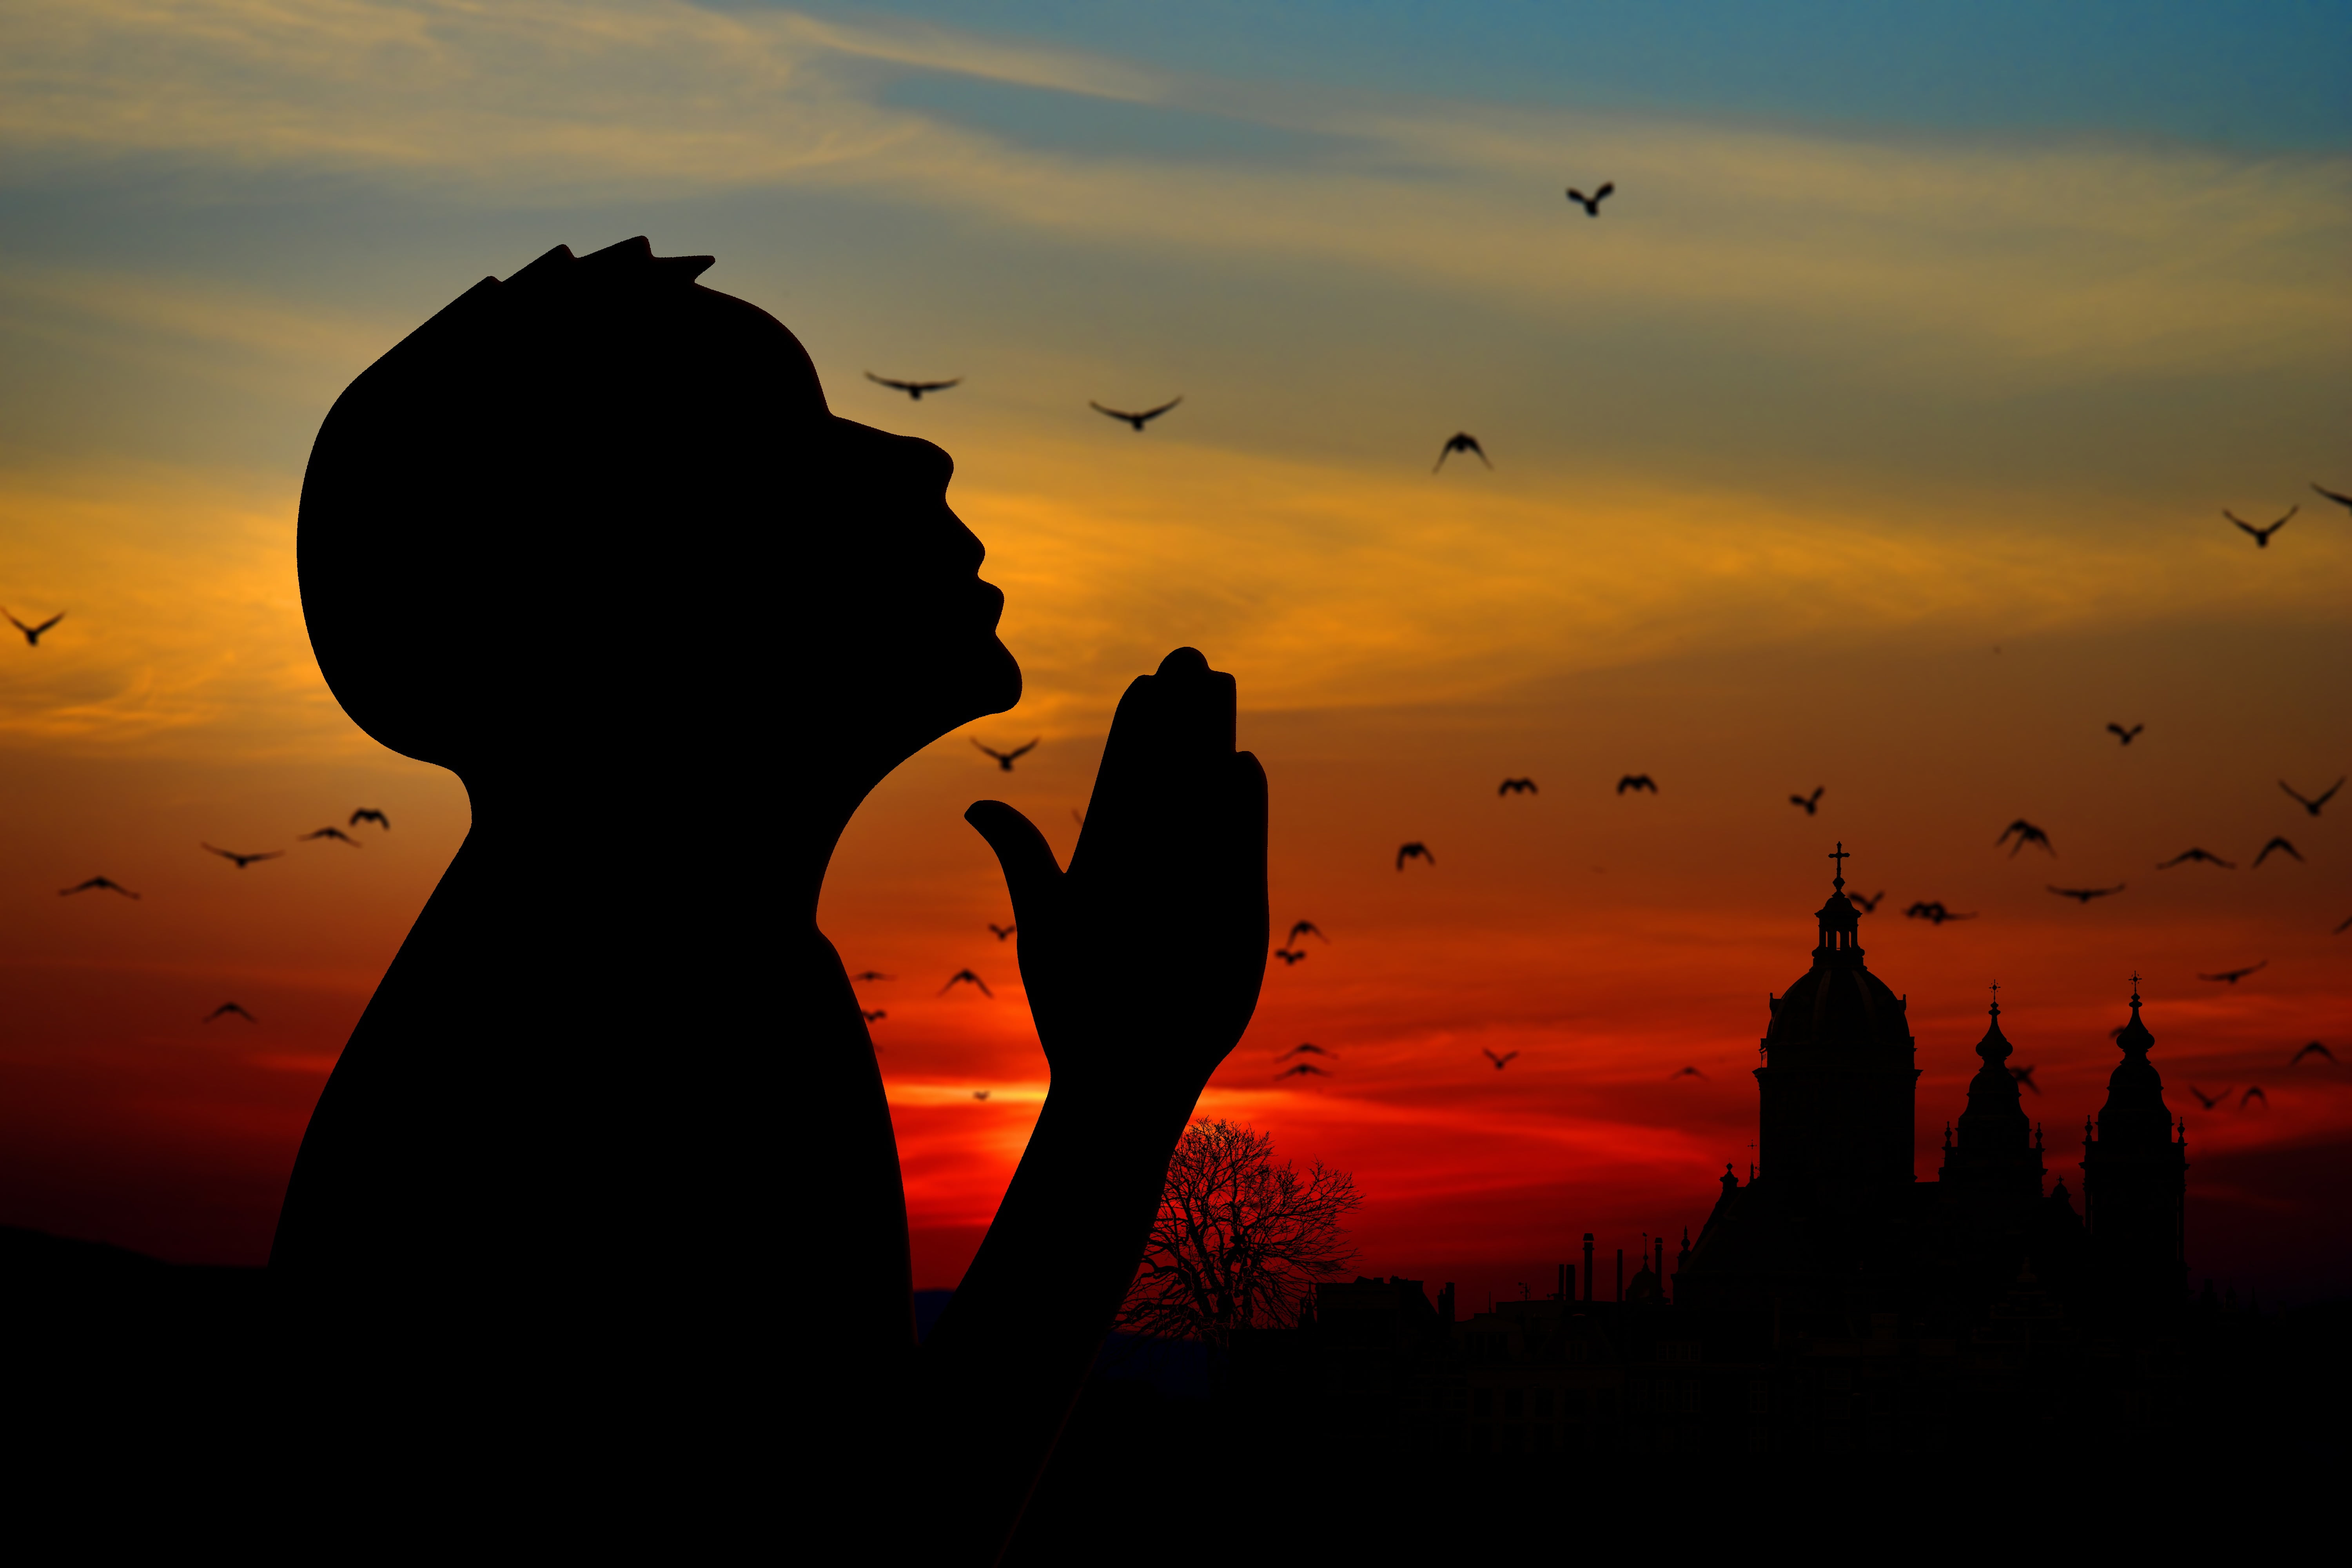 silhouette of man photo, prayer, sky, sunset, back Lit, dusk